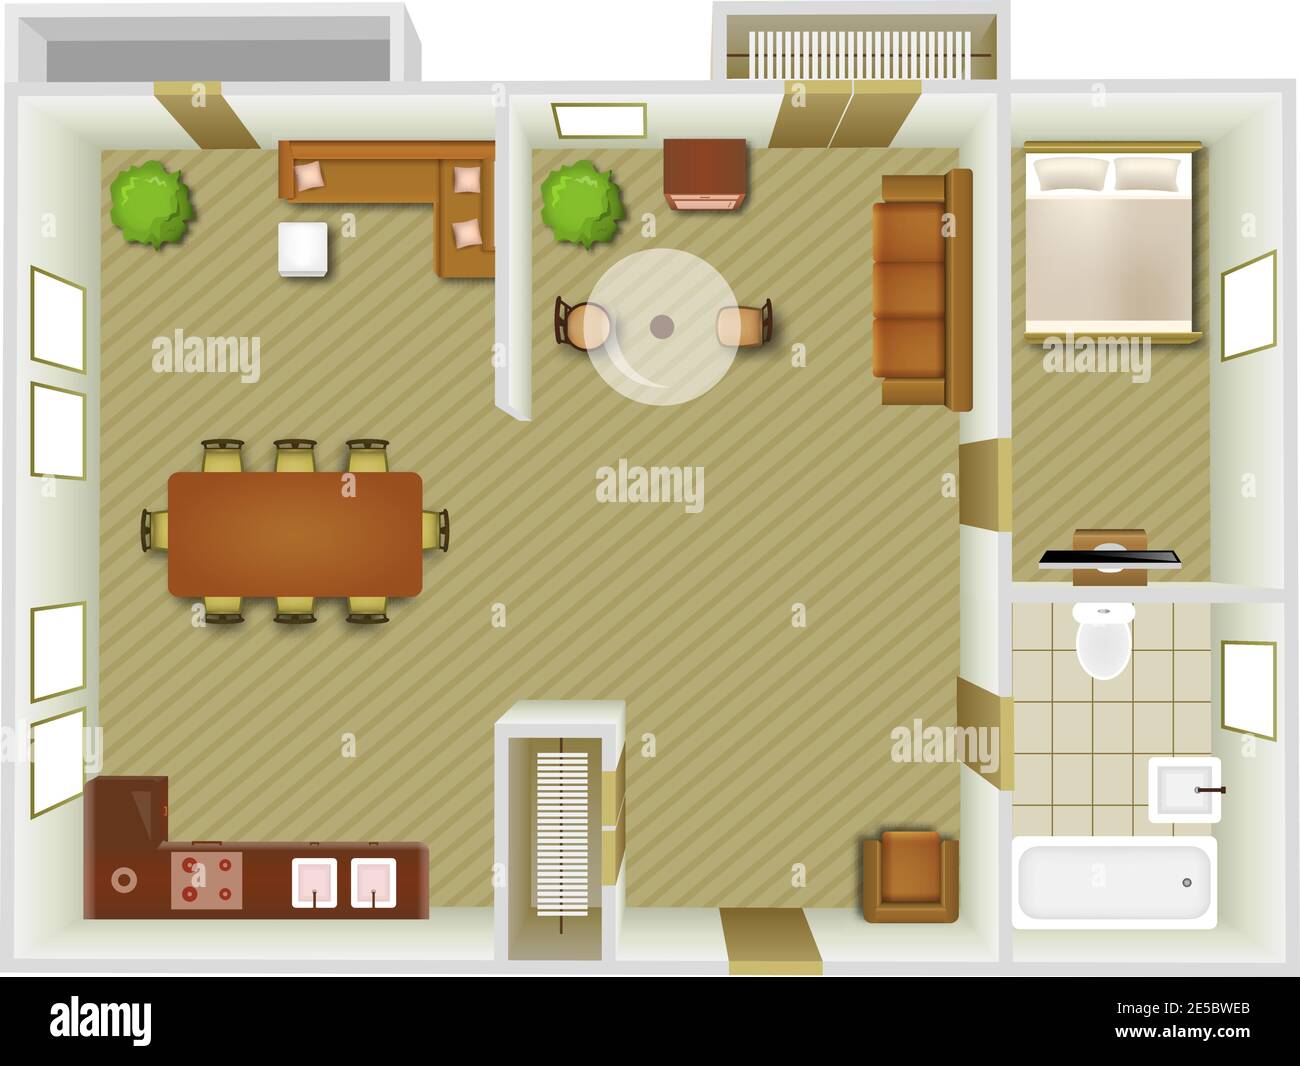 Wohnung Innenansicht von oben mit Wohnzimmer und Küchenmöbeln vektorgrafik Stock Vektor